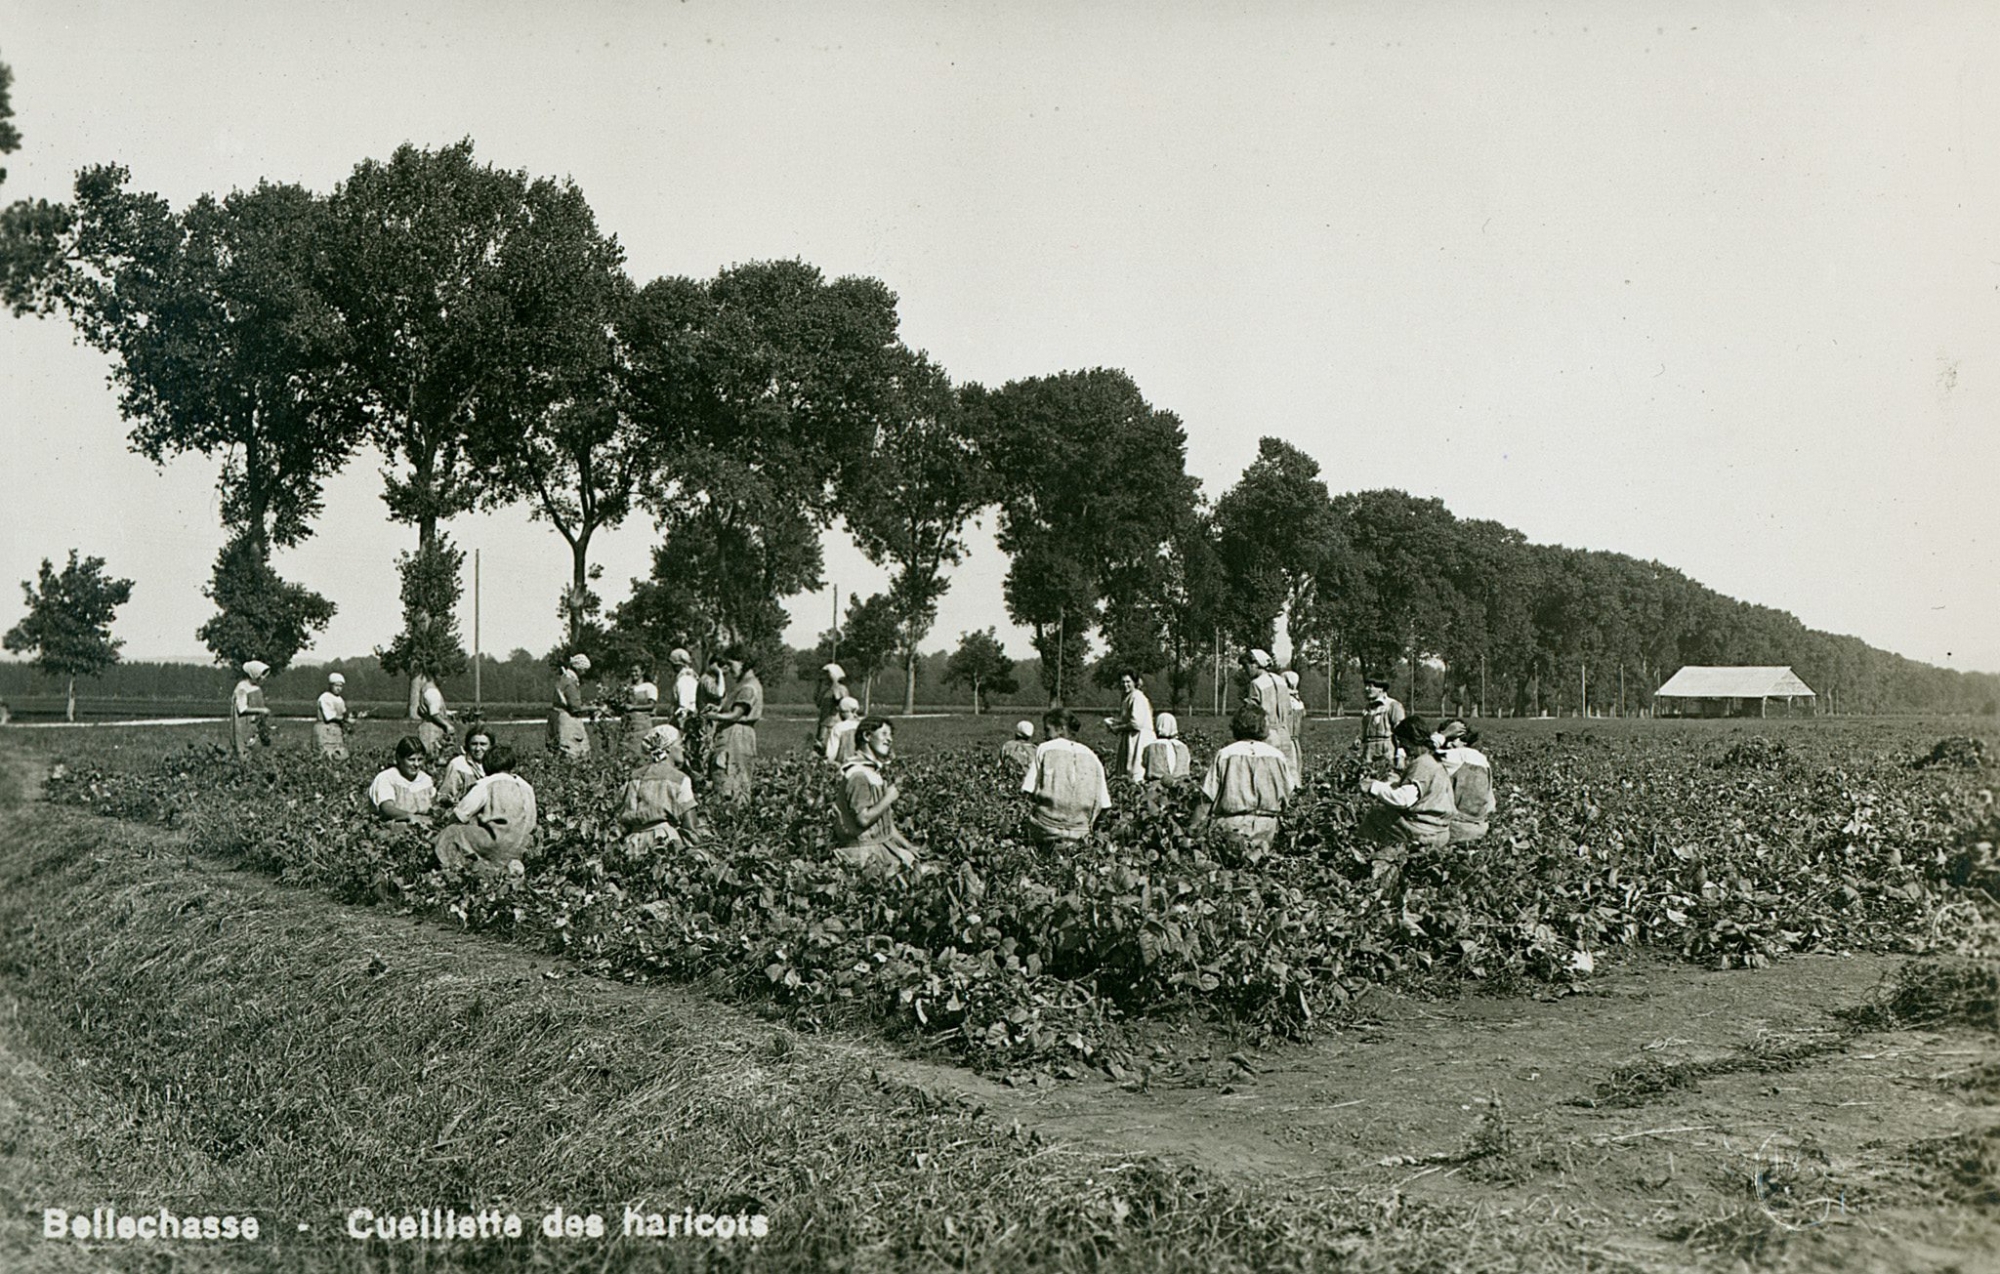 La cueillette des haricots par les détenues de Bellechasse, dans les années 1930.
© BCU Fribourg. Fonds Victor Buchs Cueillette des haricots